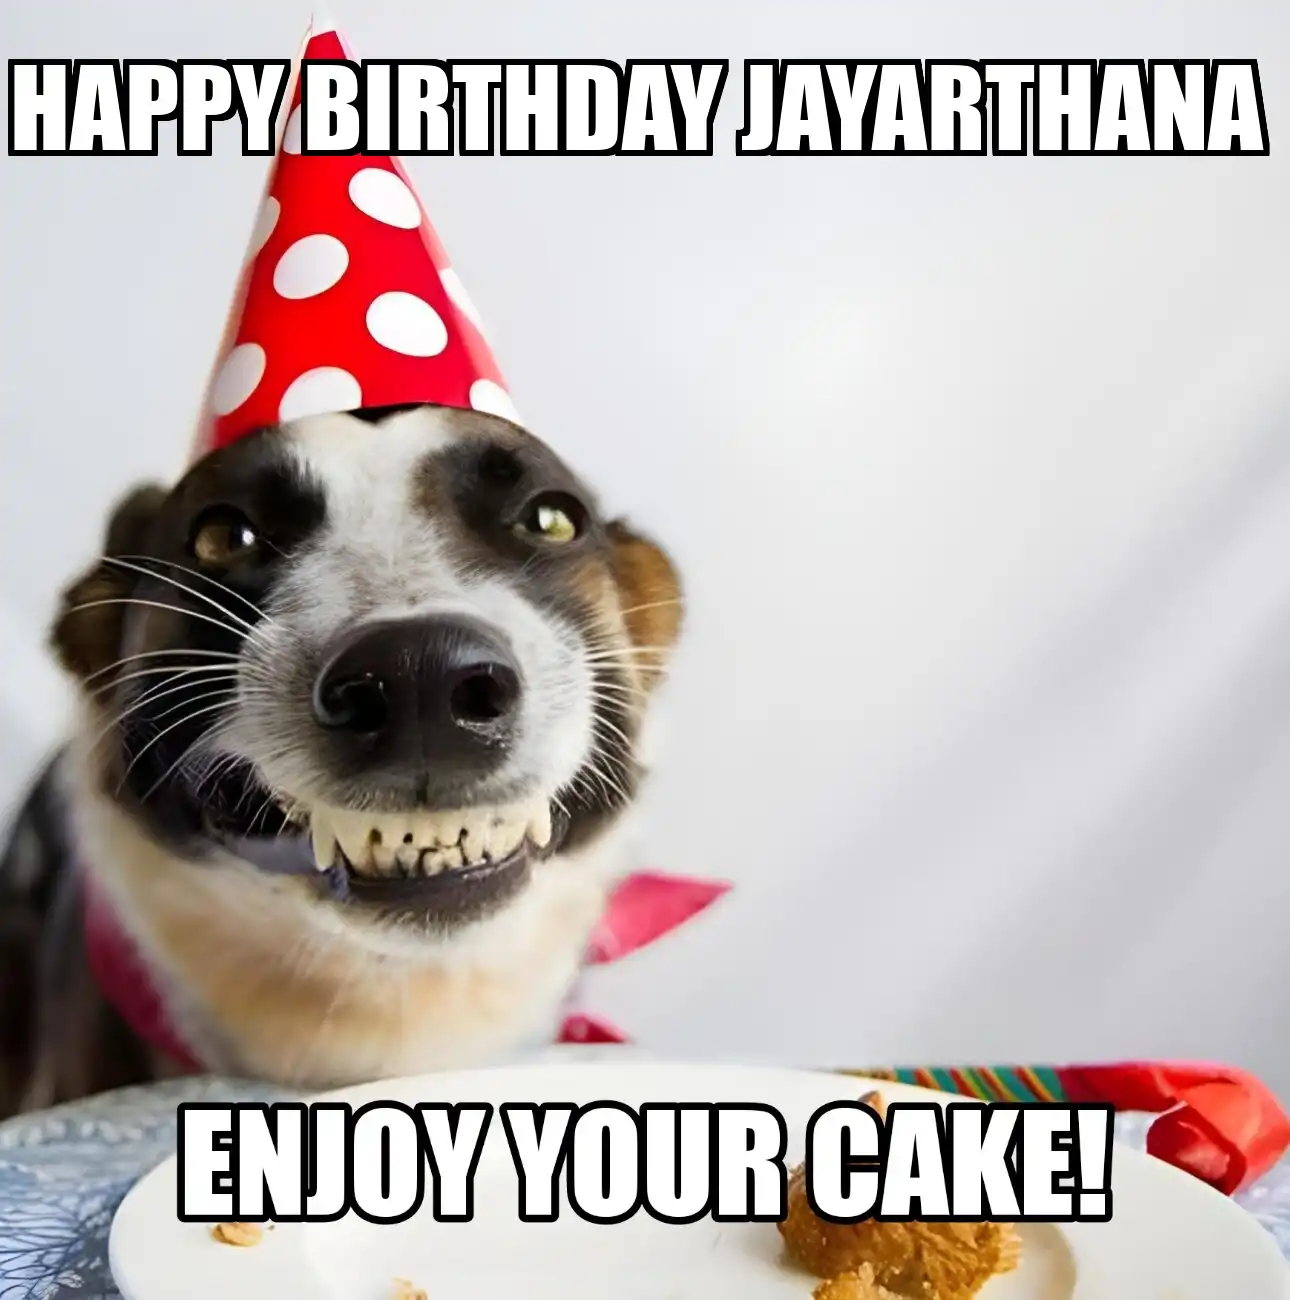 Happy Birthday Jayarthana Enjoy Your Cake Dog Meme